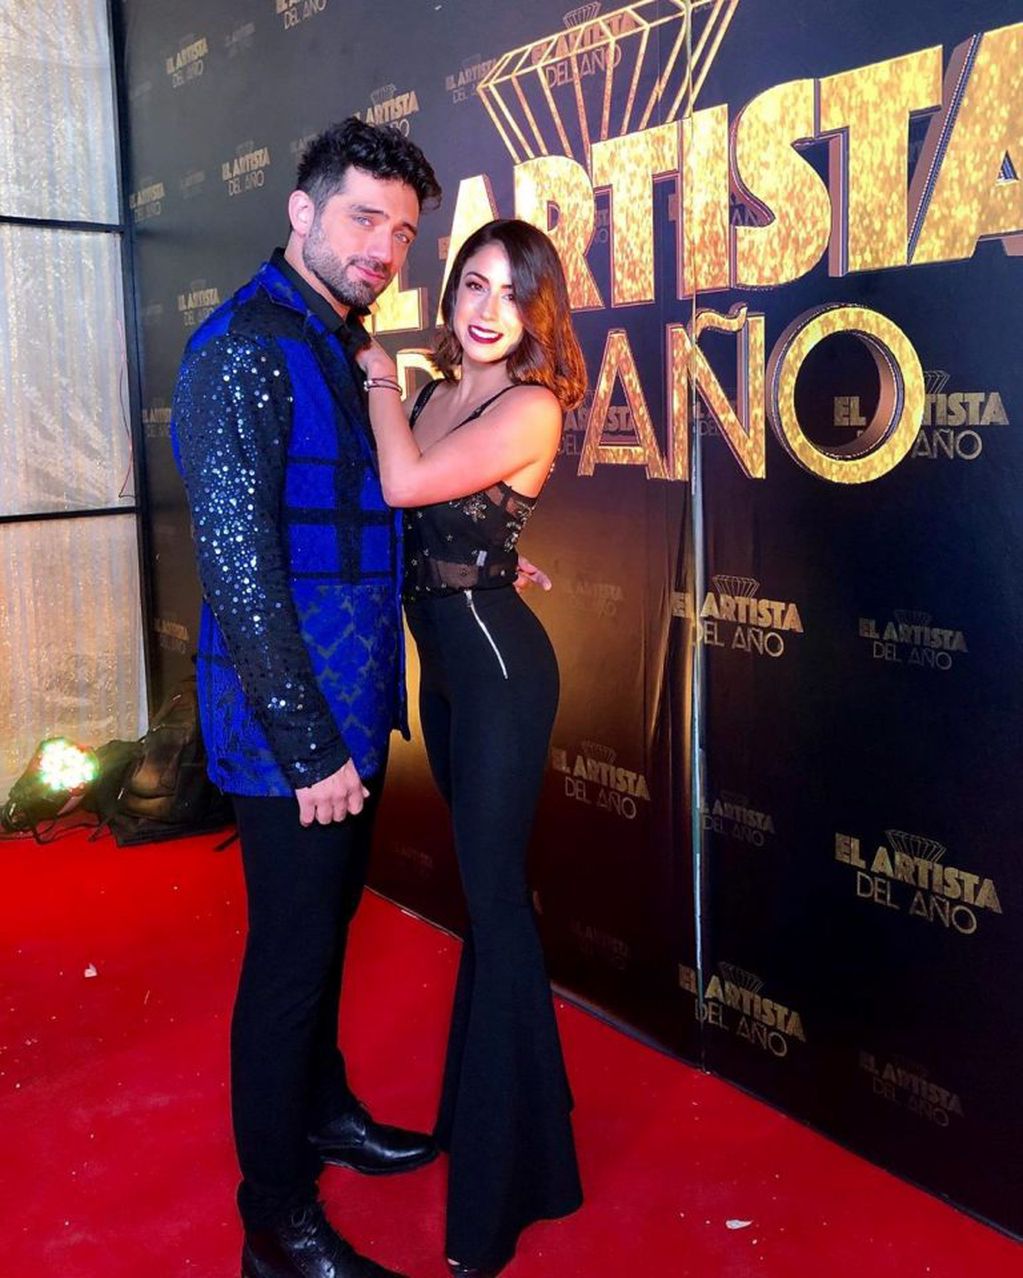 Pablo Heredia y su novia Macarena Berná en la gala de "El artista del año", un concurso de talentos de Perú (Foto: Instagram/ pabloheredia10)